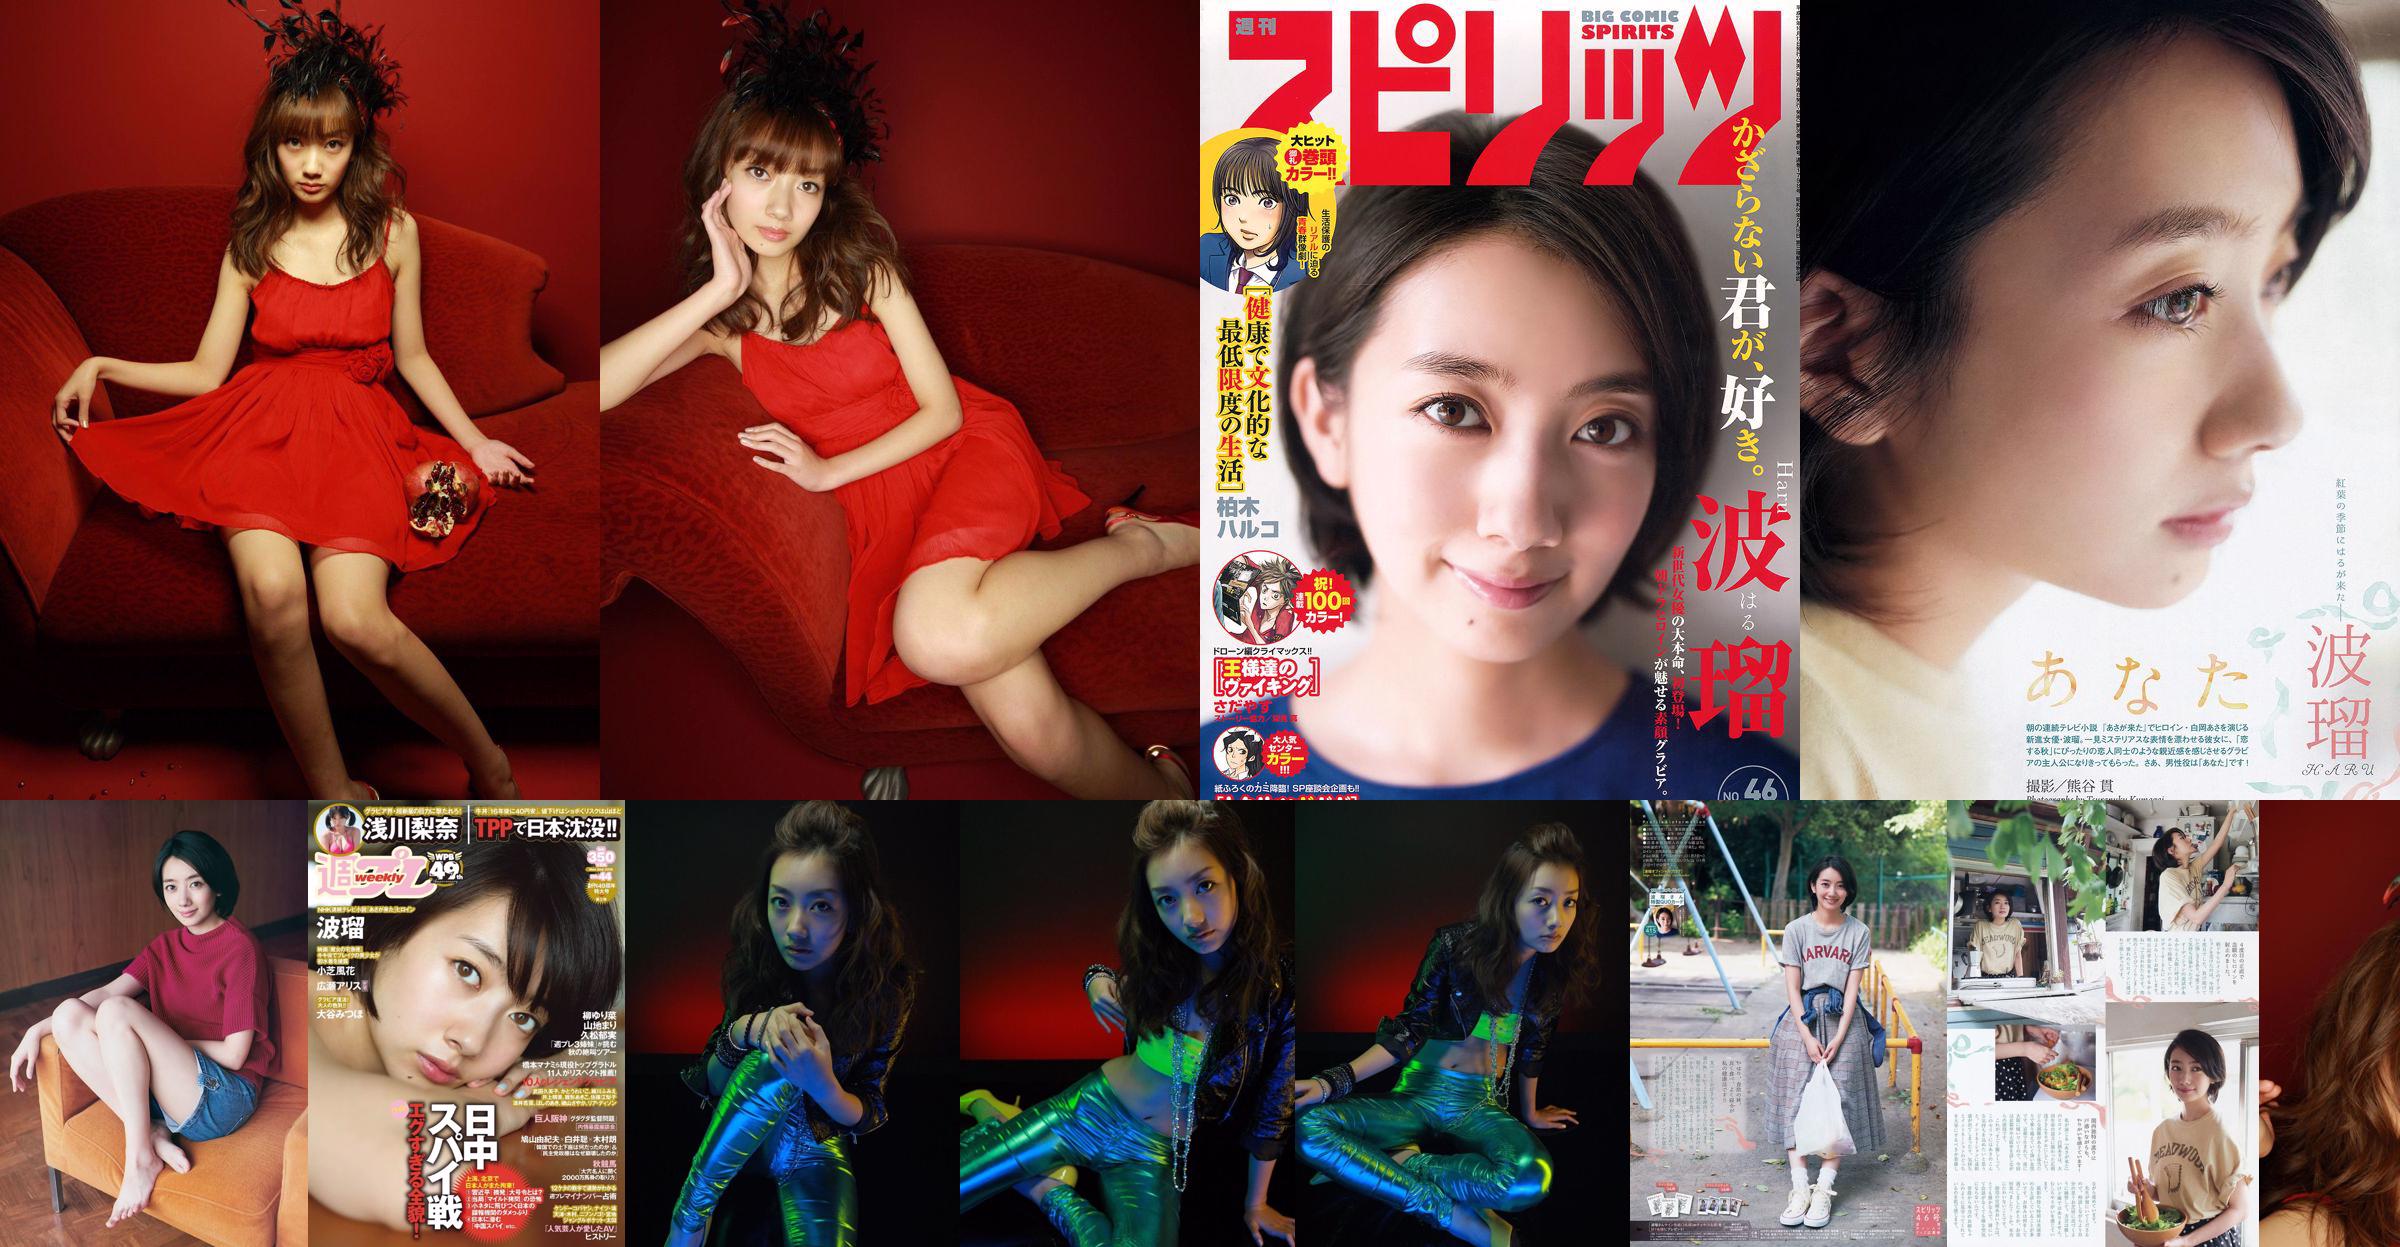 [Weekly Big Comic Spirits] Boru 2015 № 46 Photo Magazine No.7b16e9 Страница 1